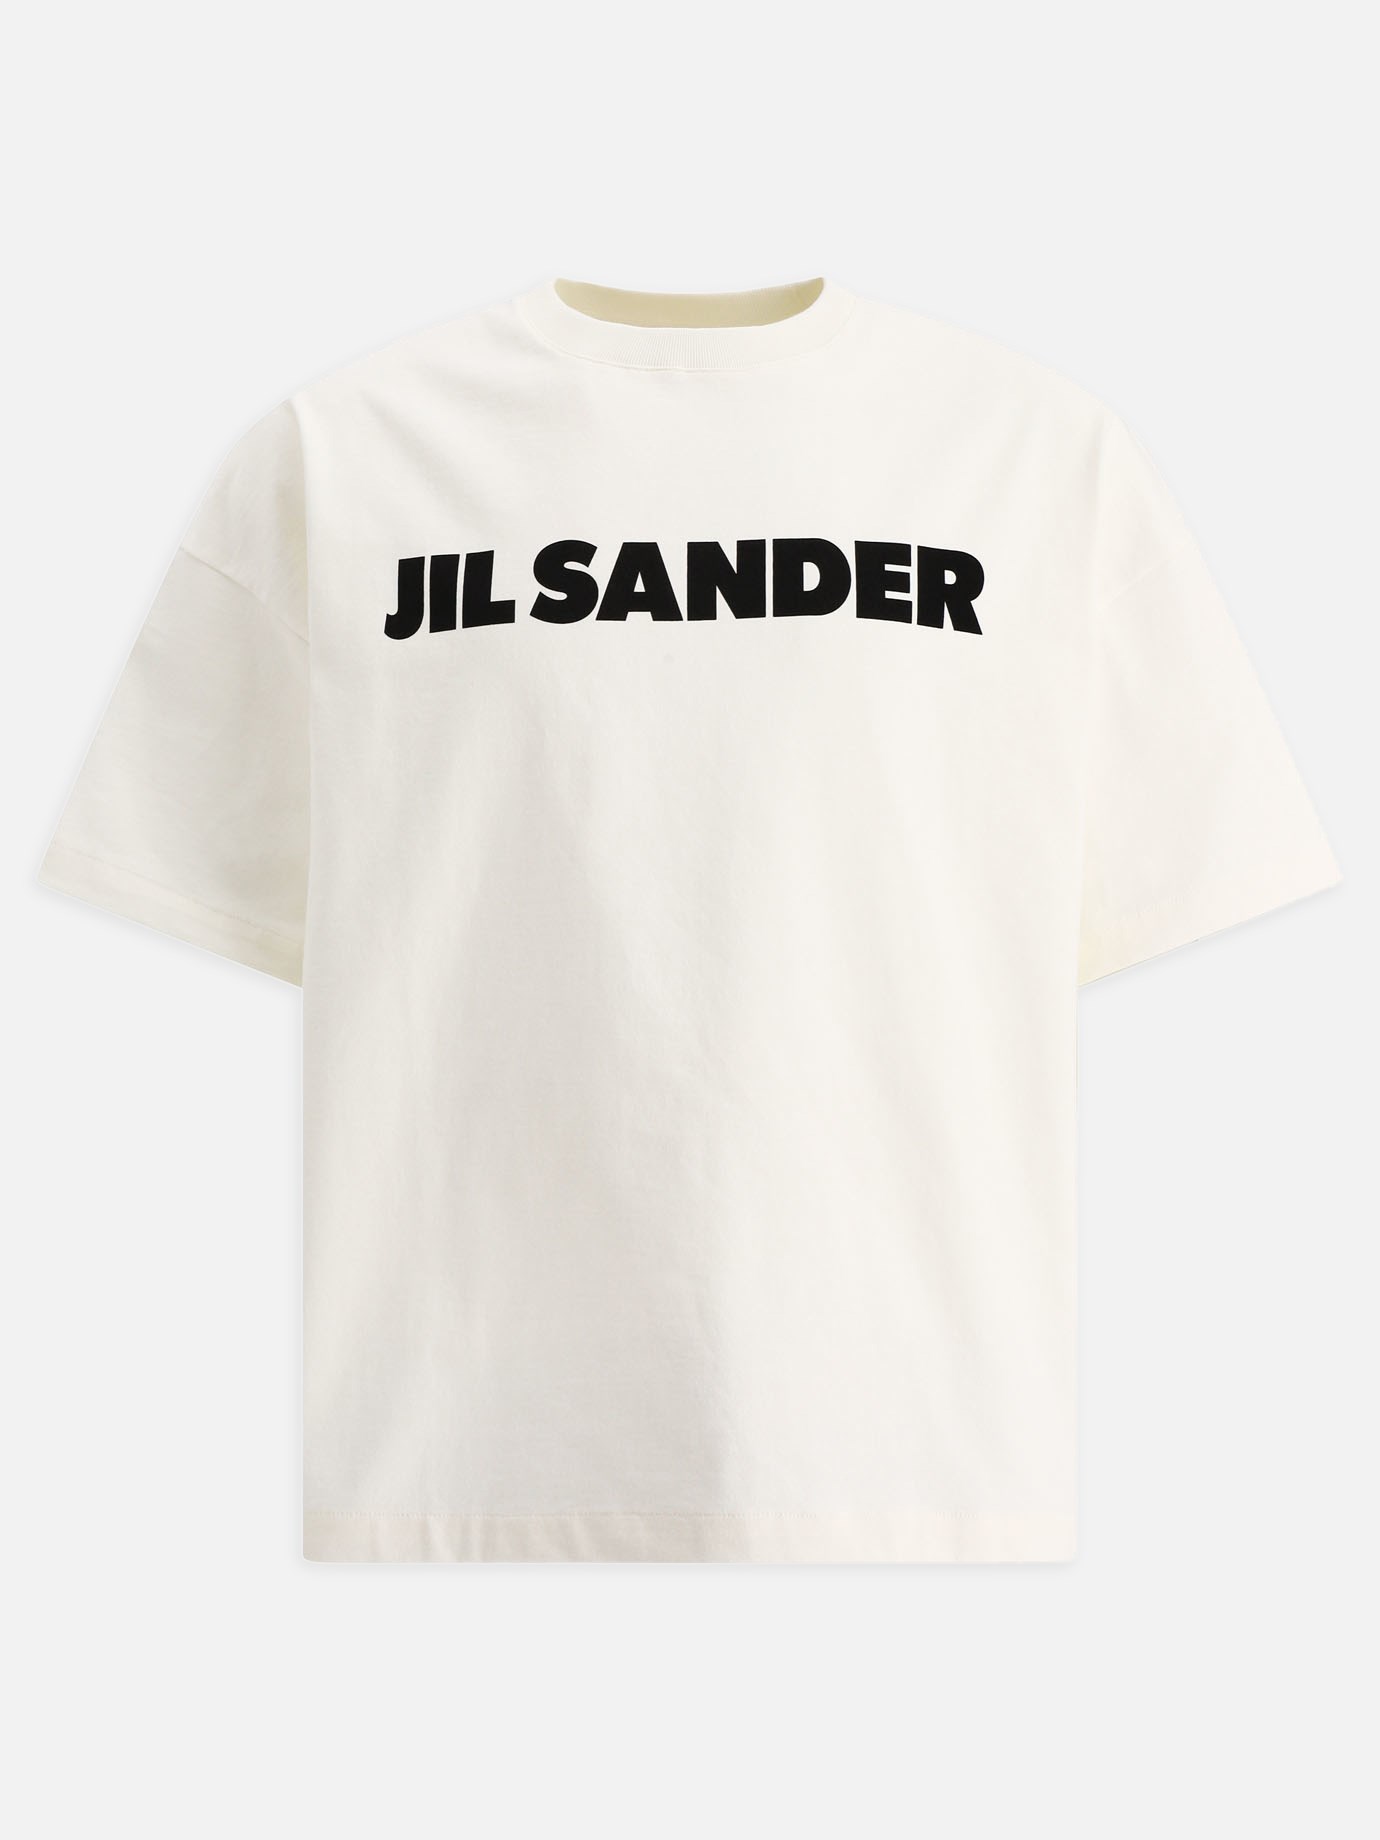  Jil Sander  t-shirtby Jil Sander - 2